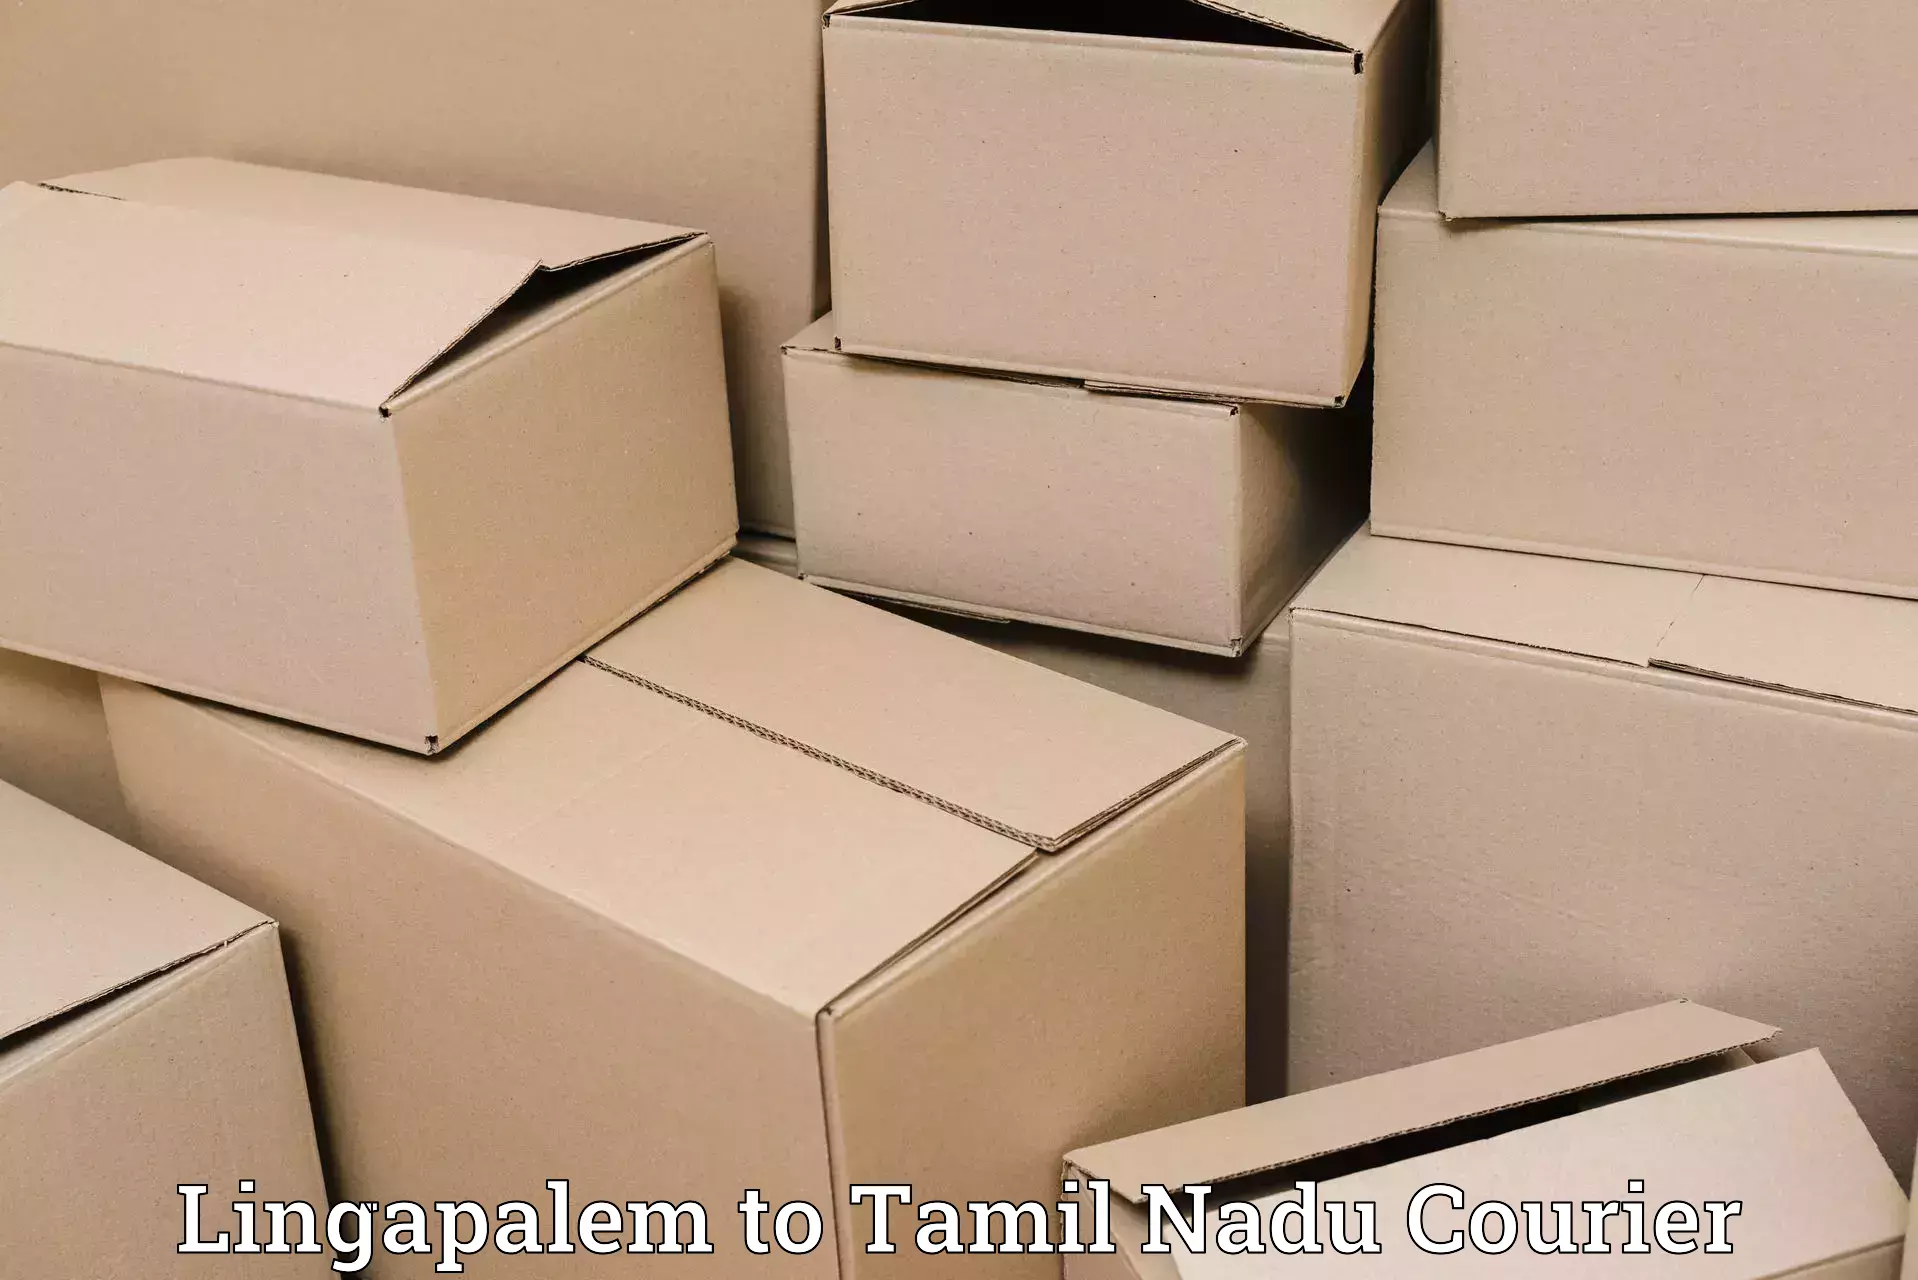 Customizable shipping options Lingapalem to Amrita Vishwa Vidyapeetham Coimbatore